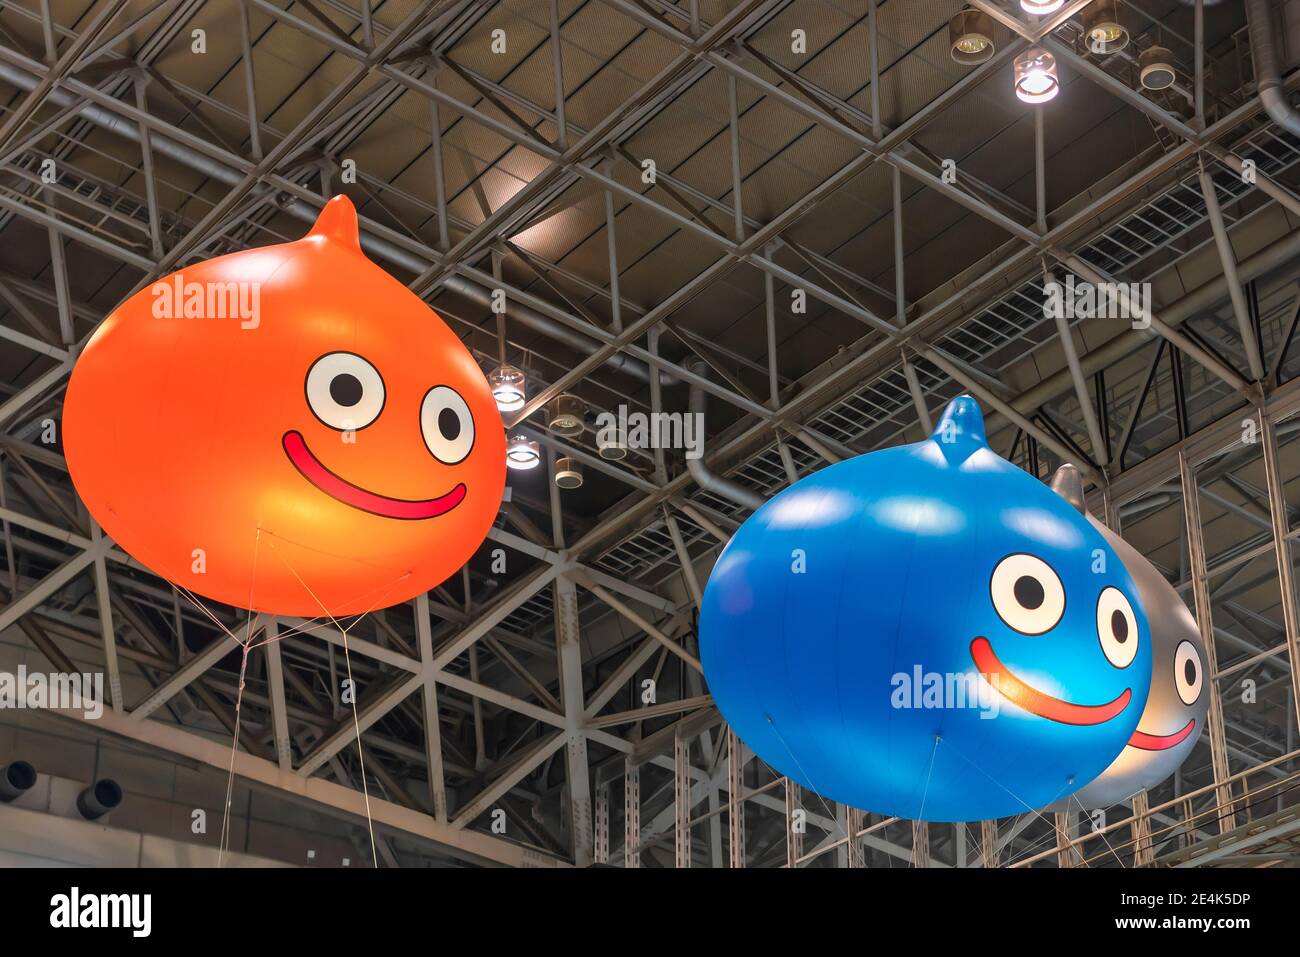 chiba, japon - décembre 22 2018: Énormes ballons gonflables représentant Slime, la mascotte du jeu de rôle Dragon Quest jeu vidéo flottant sous le Banque D'Images